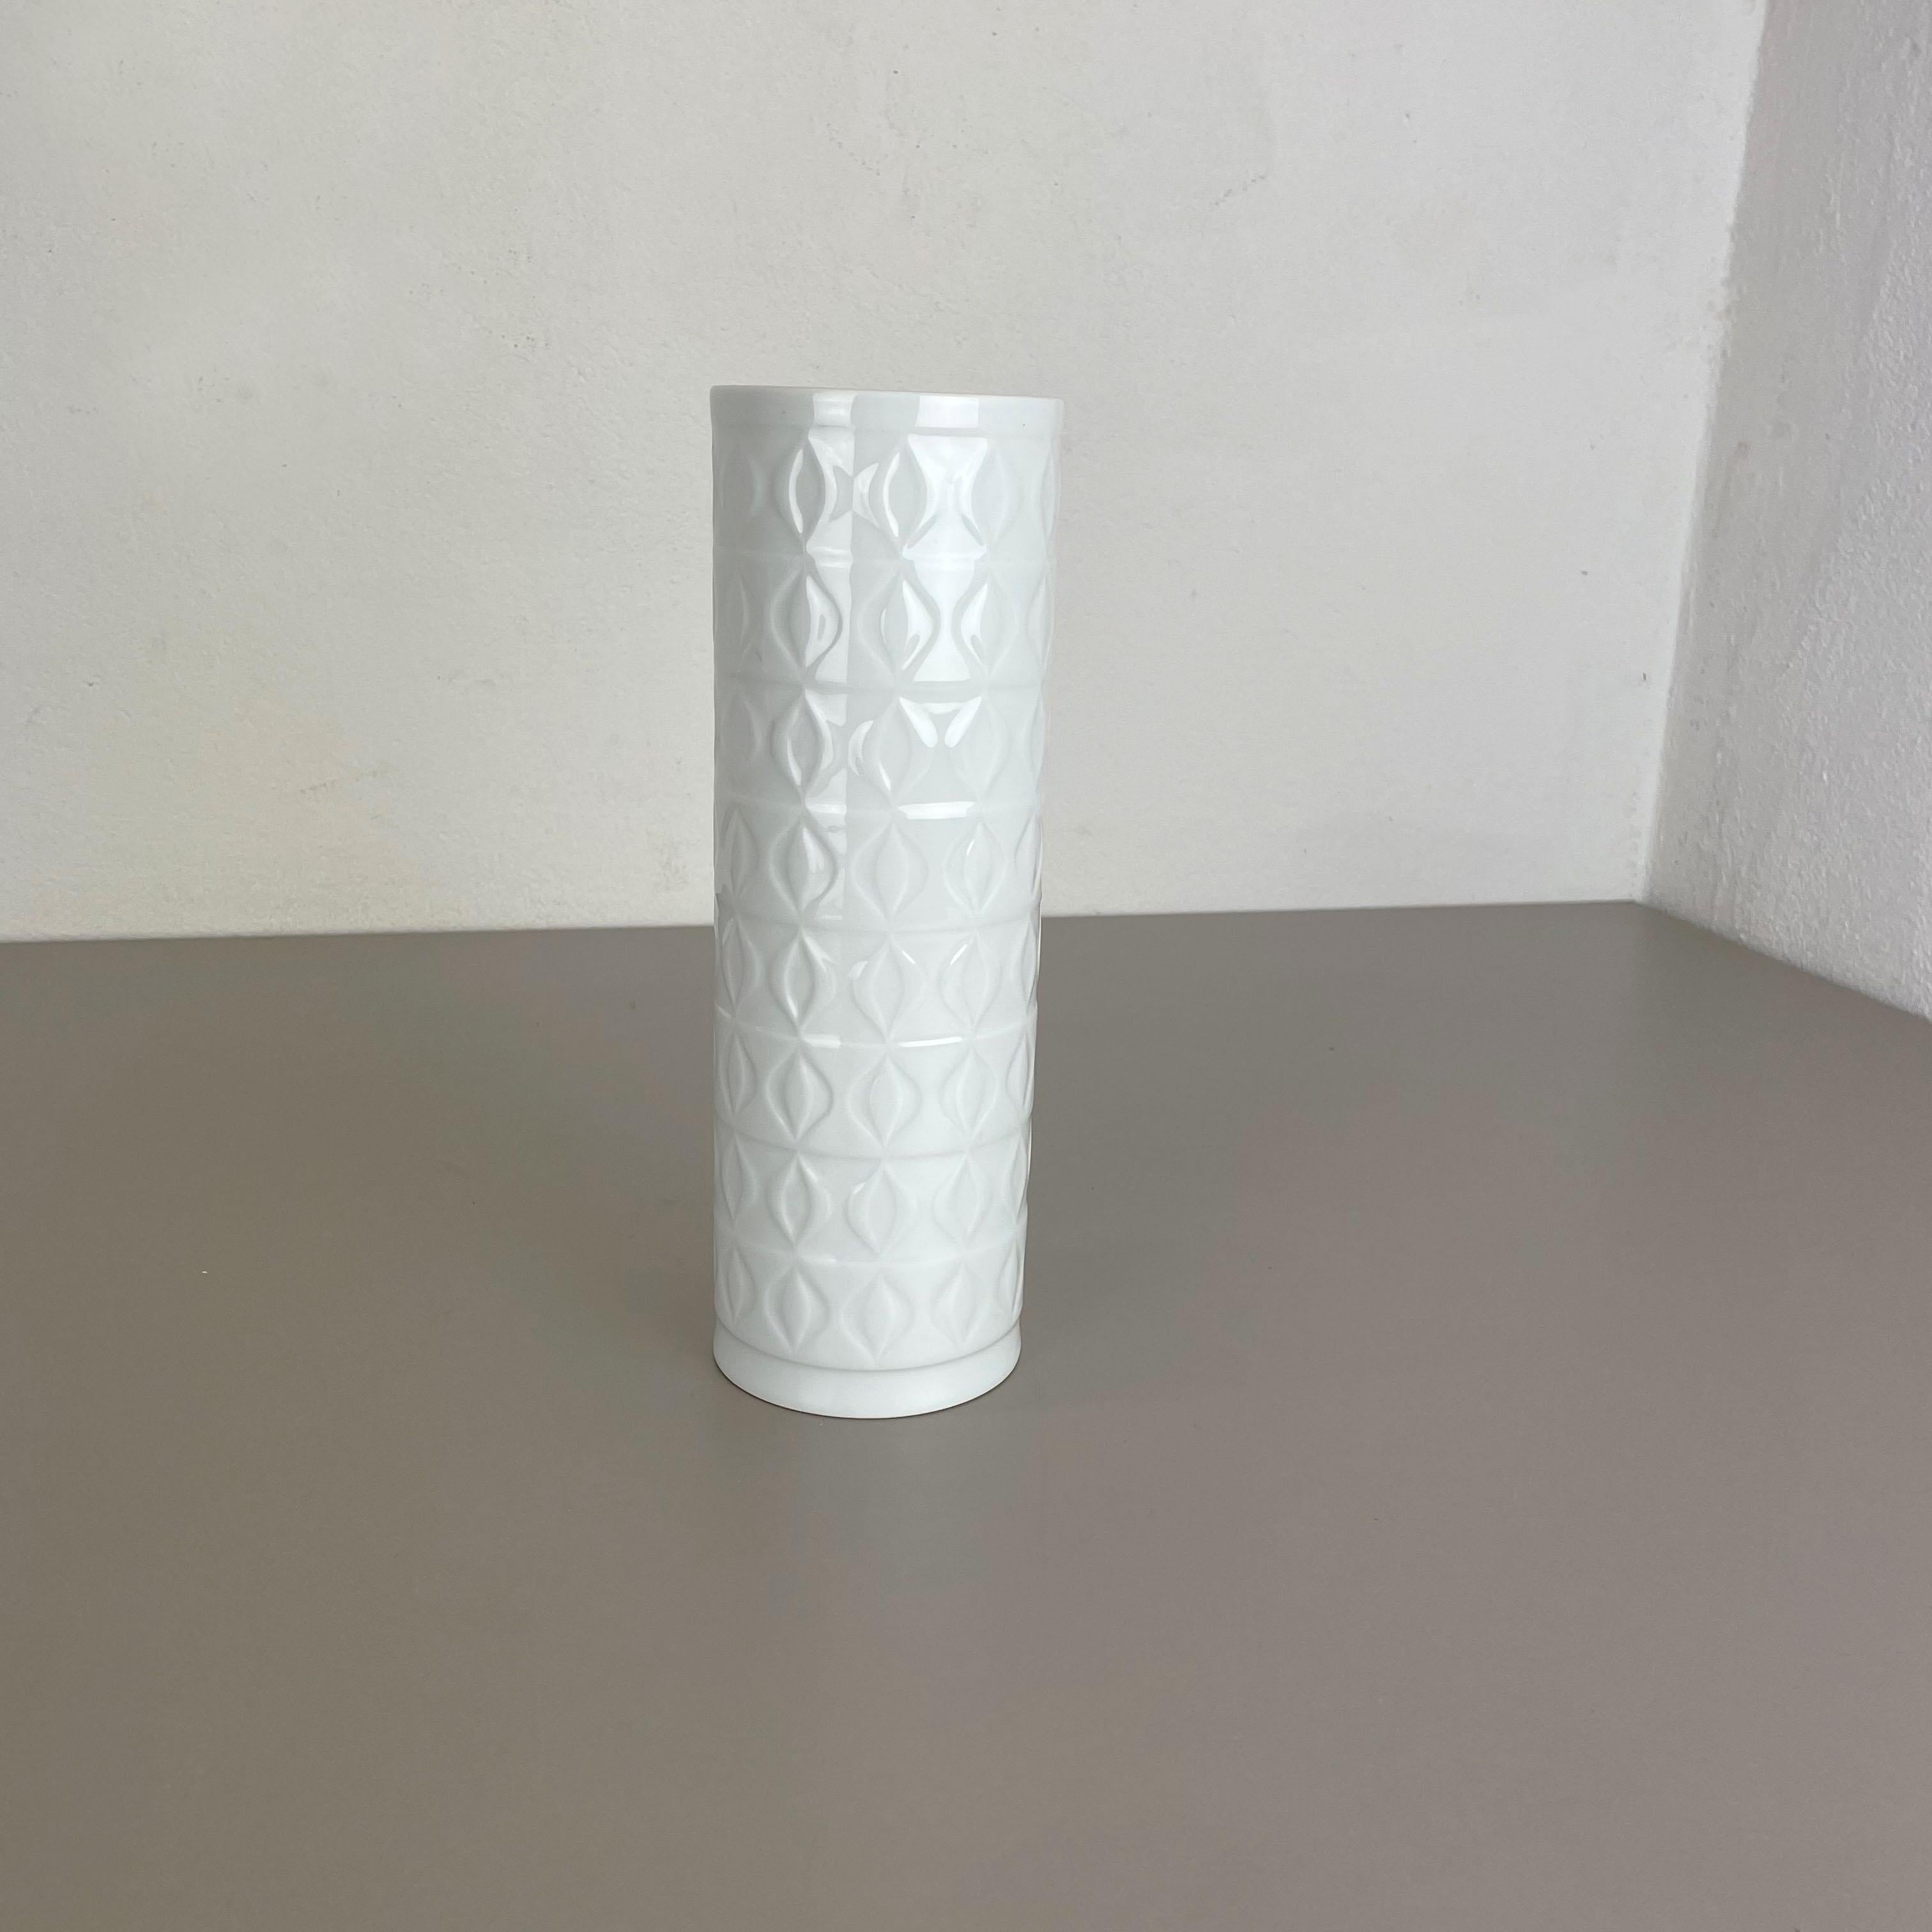 Artikel:

Op Art Porzellanvase


Produzent:

AK Kaiser, Deutschland


Beschreibung:

Diese originale Vintage OP Art Vase wurde in den 1970er Jahren in Deutschland hergestellt. Sie besteht aus Porzellan mit einer skulpturalen